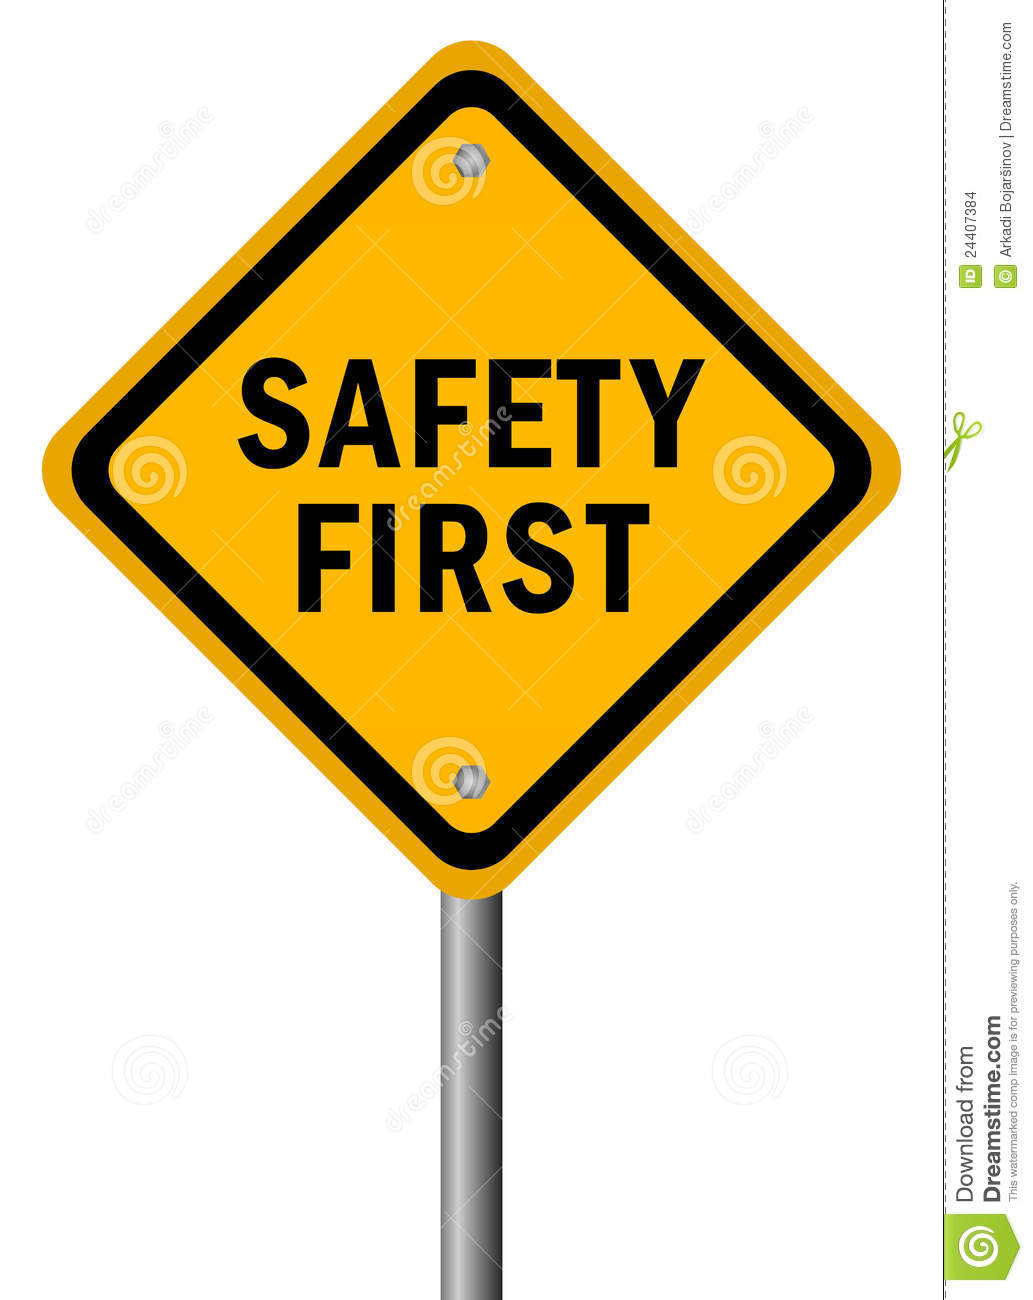 Safety clip art images illust